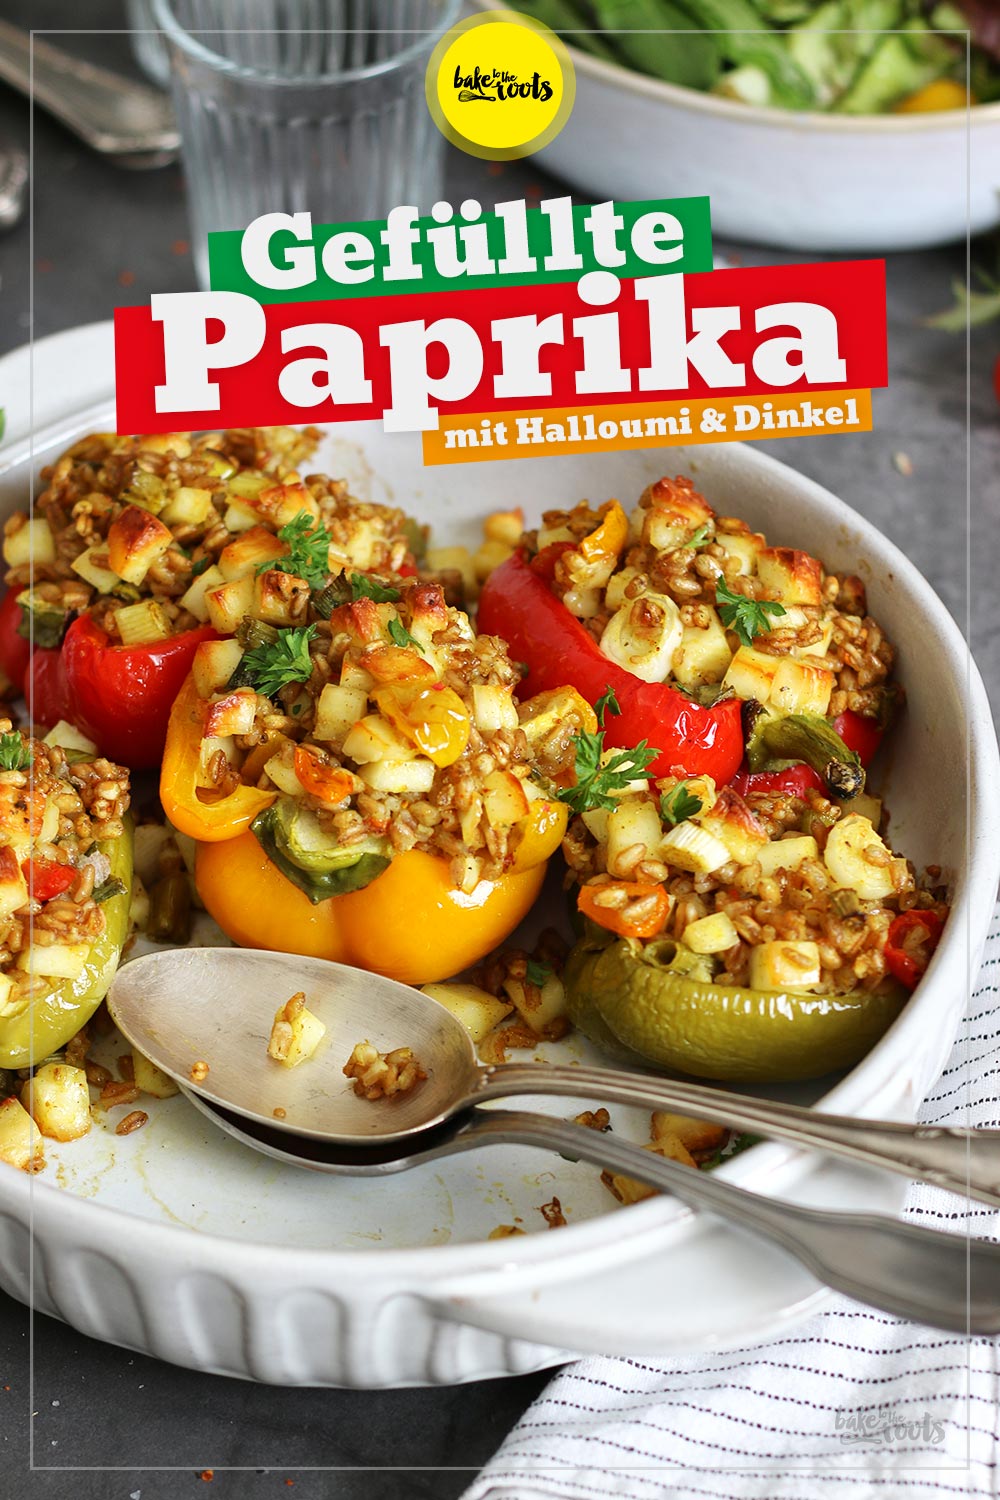 Gefüllte Paprika mit Halloumi und Dinkel | Bake to the roots